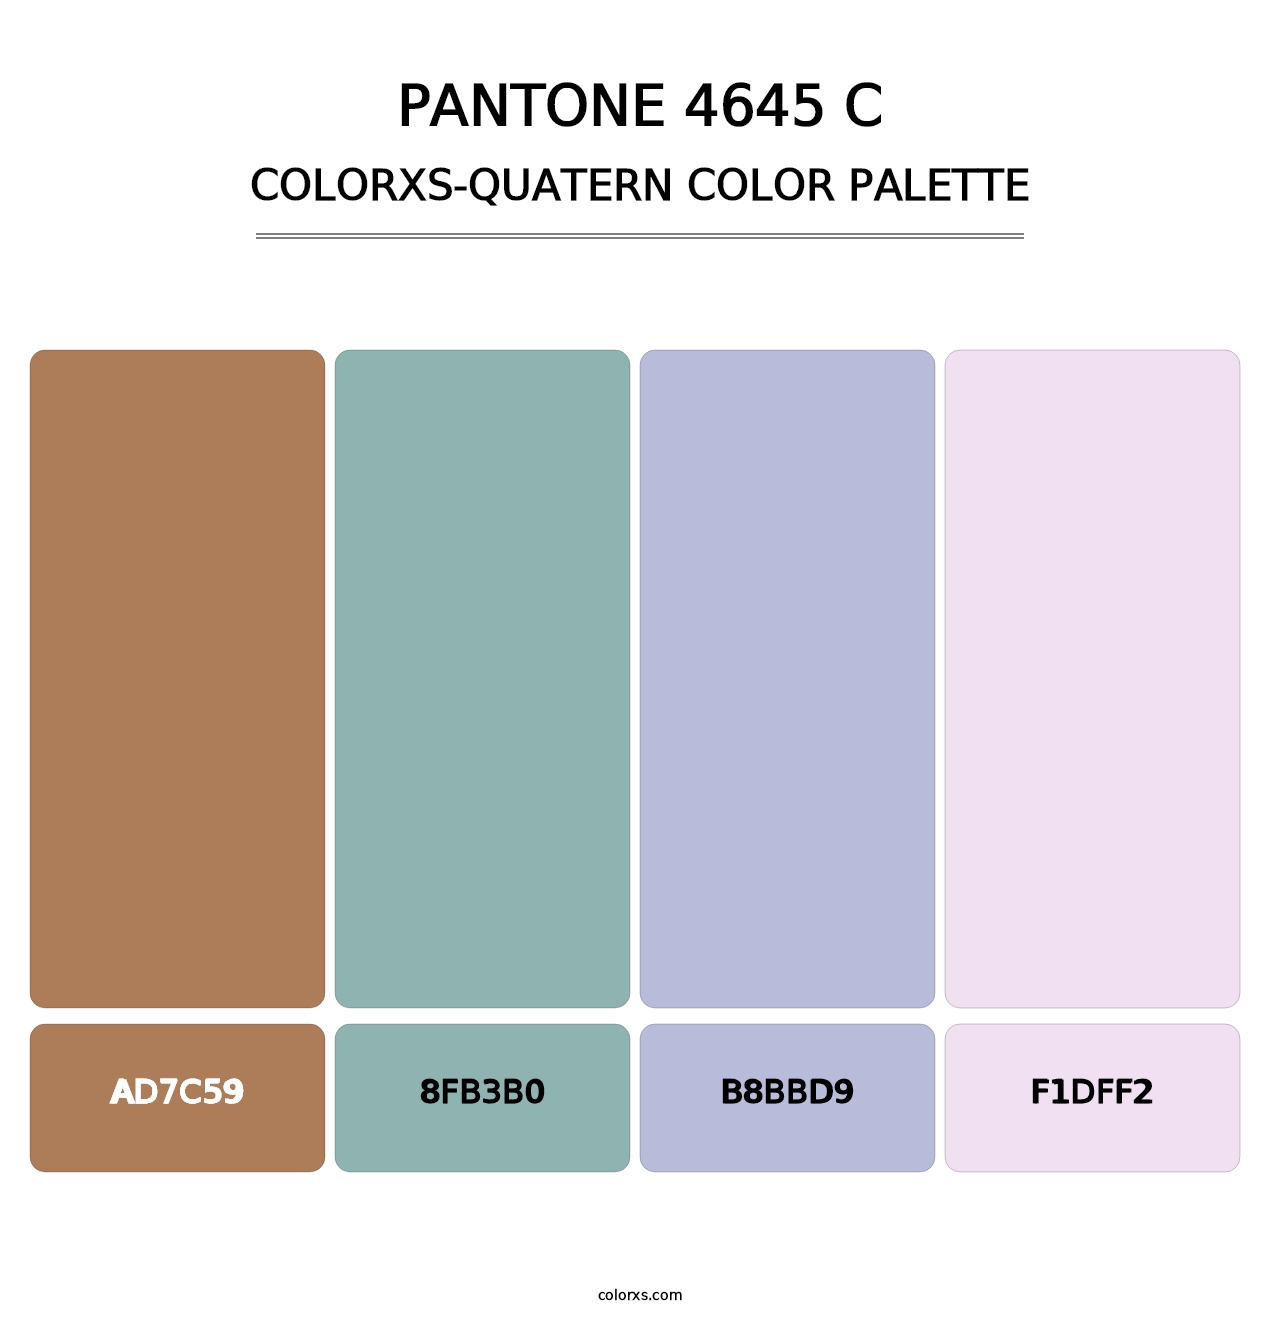 PANTONE 4645 C - Colorxs Quatern Palette